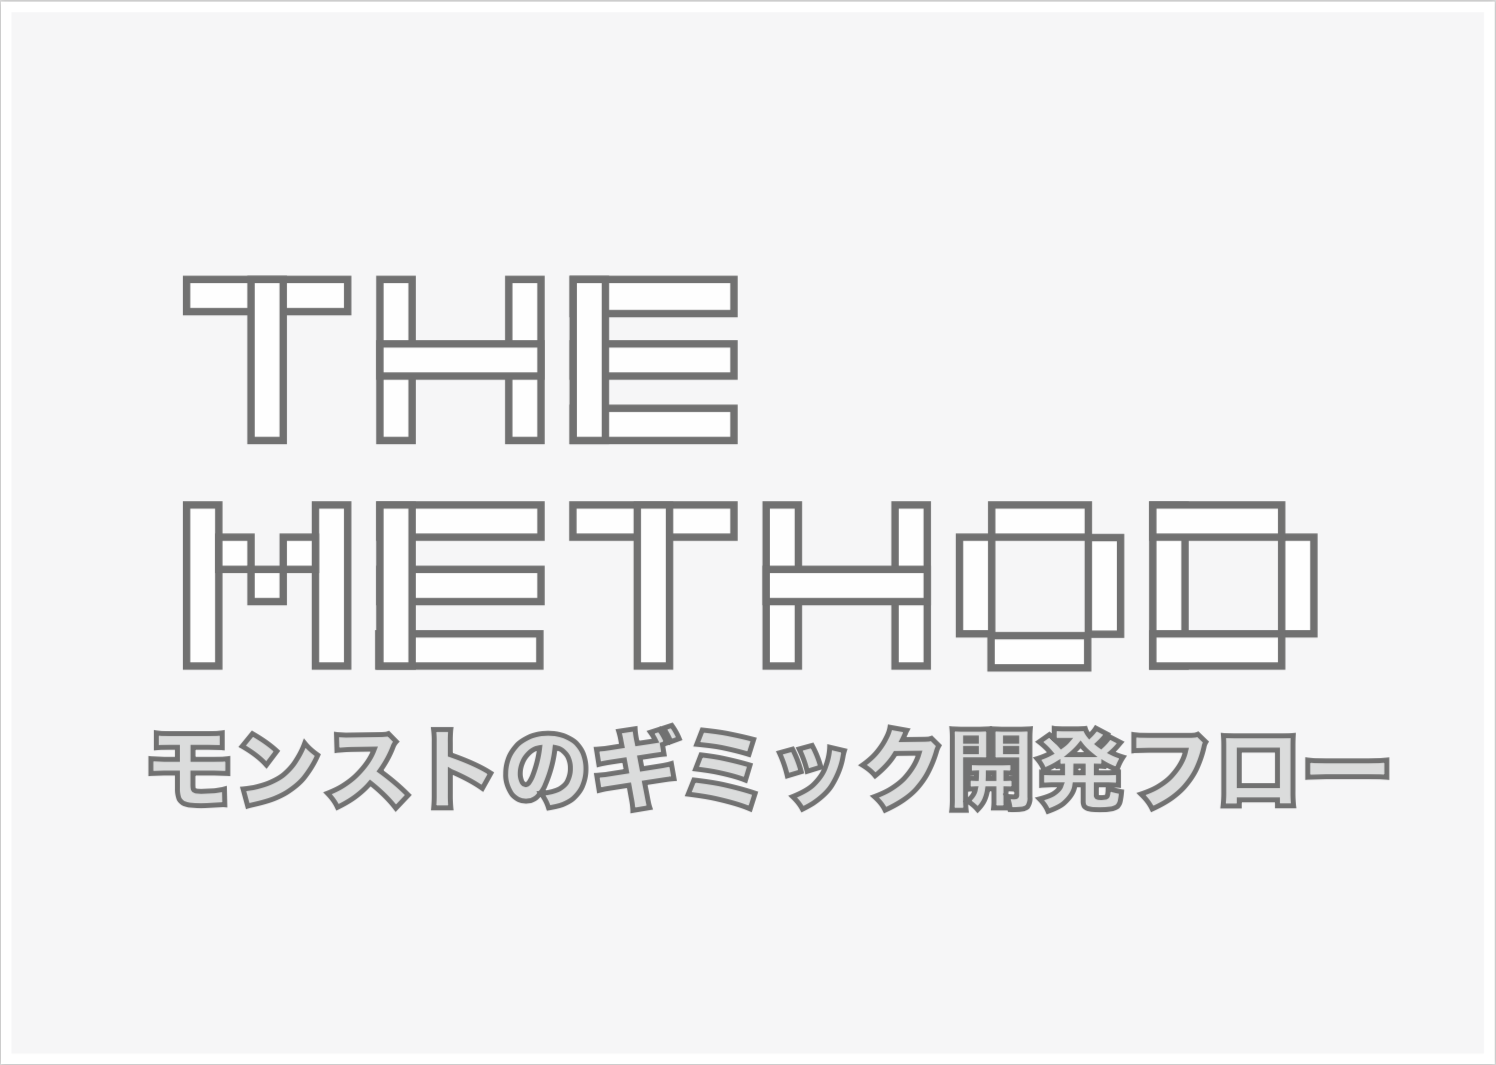 ミクシィ、オンラインセミナー「The Method #0 『～モンストのギミック開発フロー紹介～』」を12月22日19時より開催